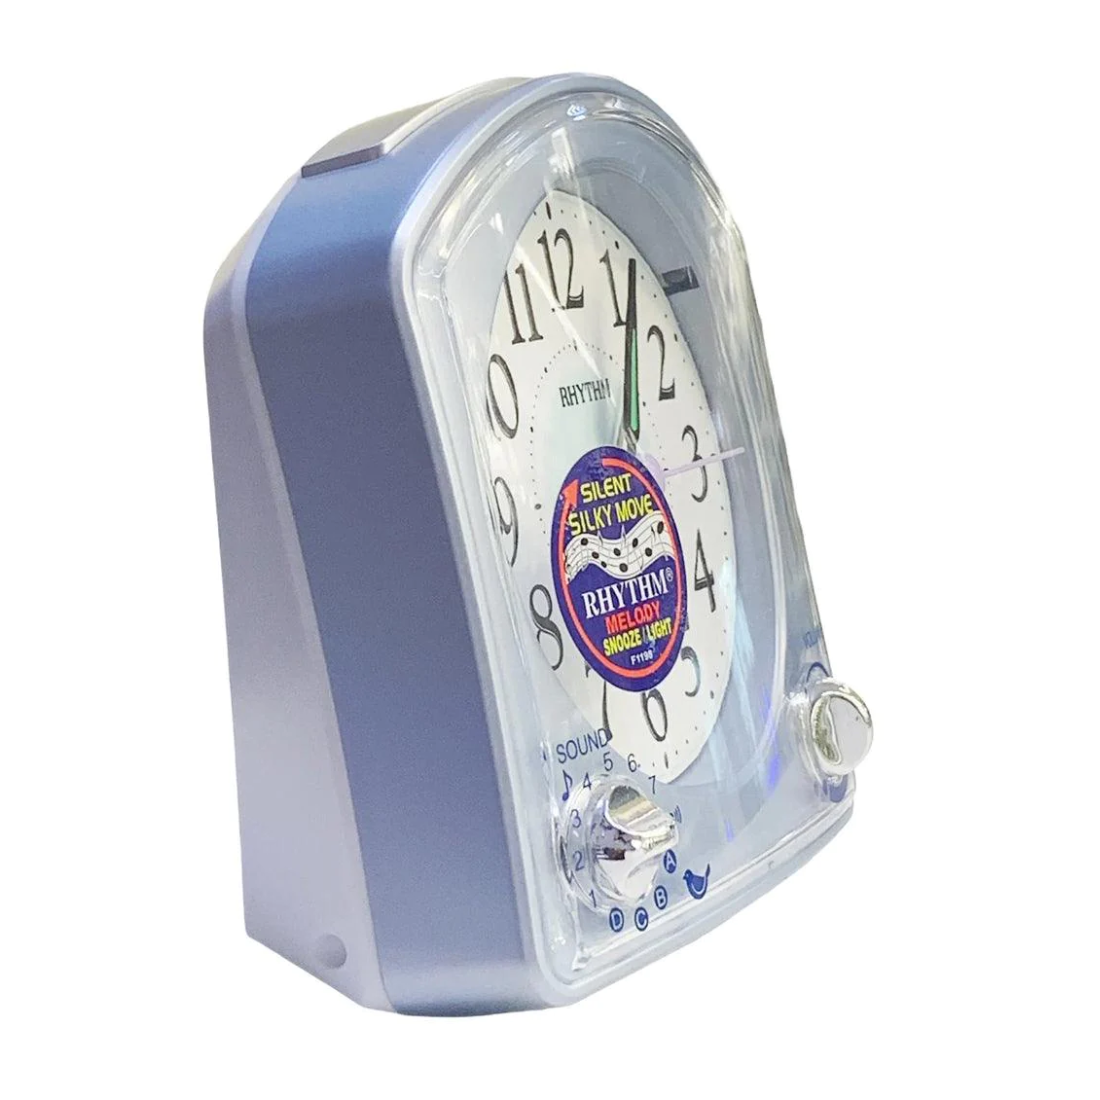 8RMA02WU04 Rhythm Quartz Melody Alarm Clock (Singapore Only)